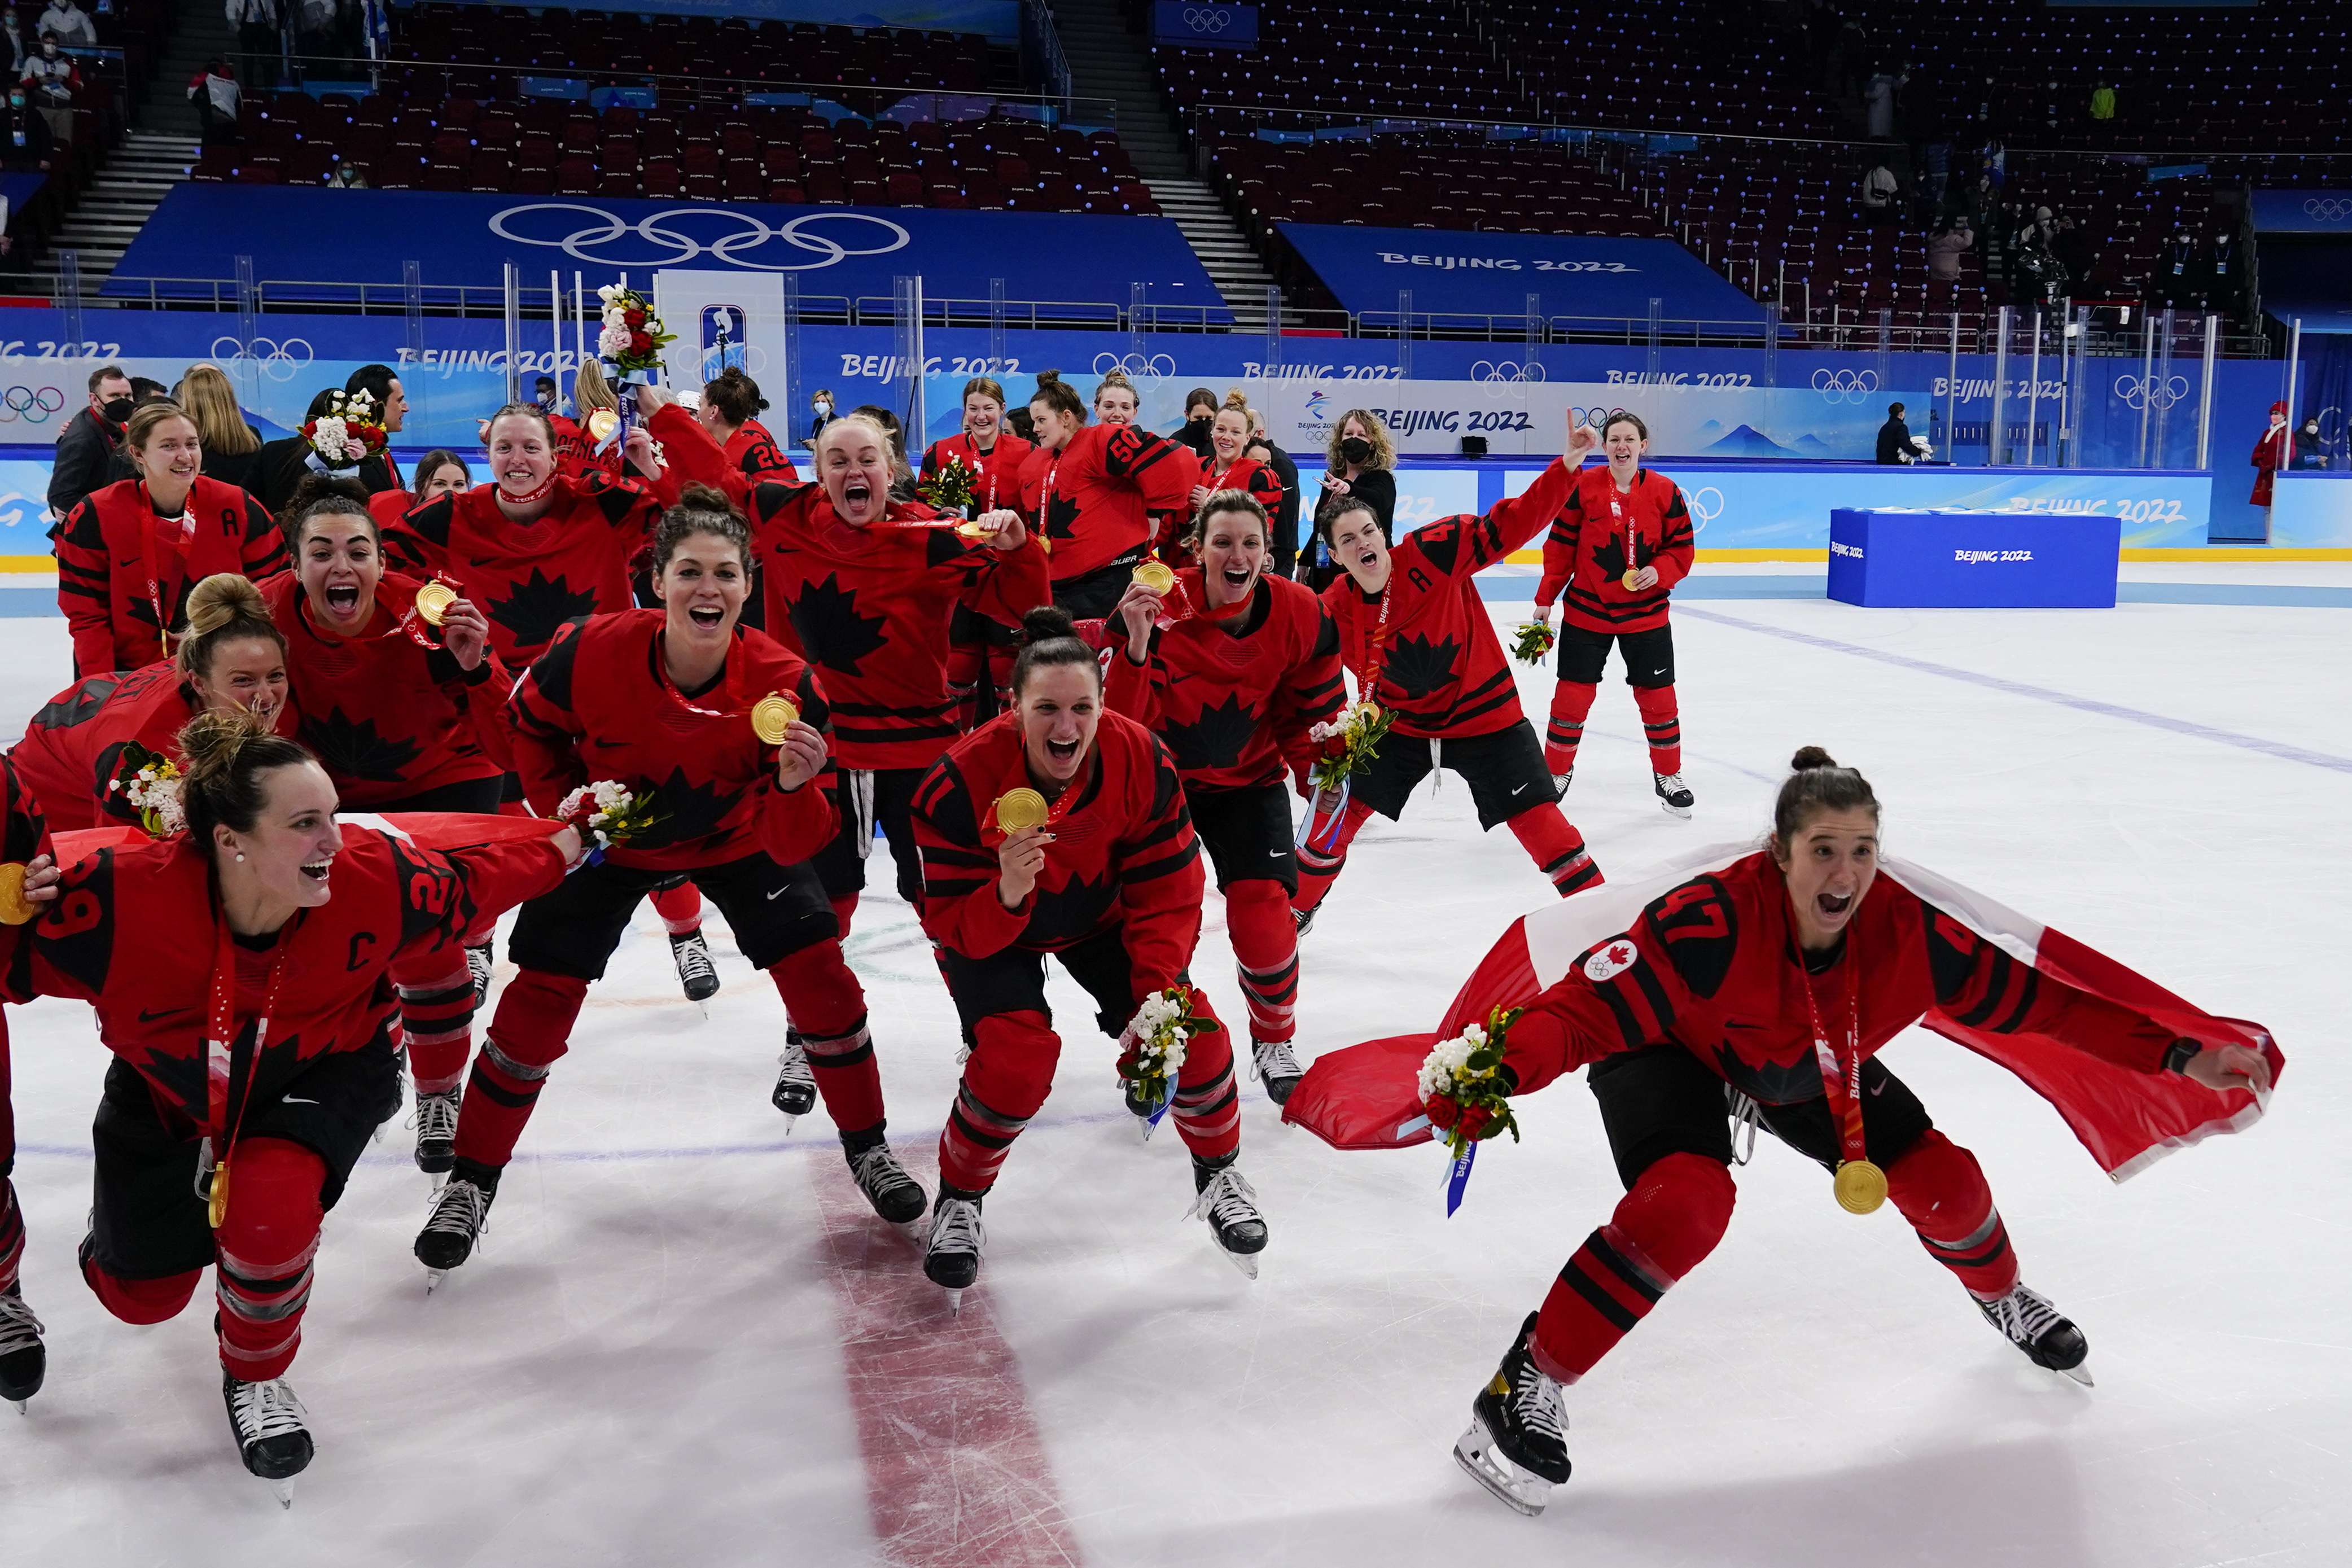 PyeongChang 2018 Team Canada Hockey Jerseys Revealed - Team Canada